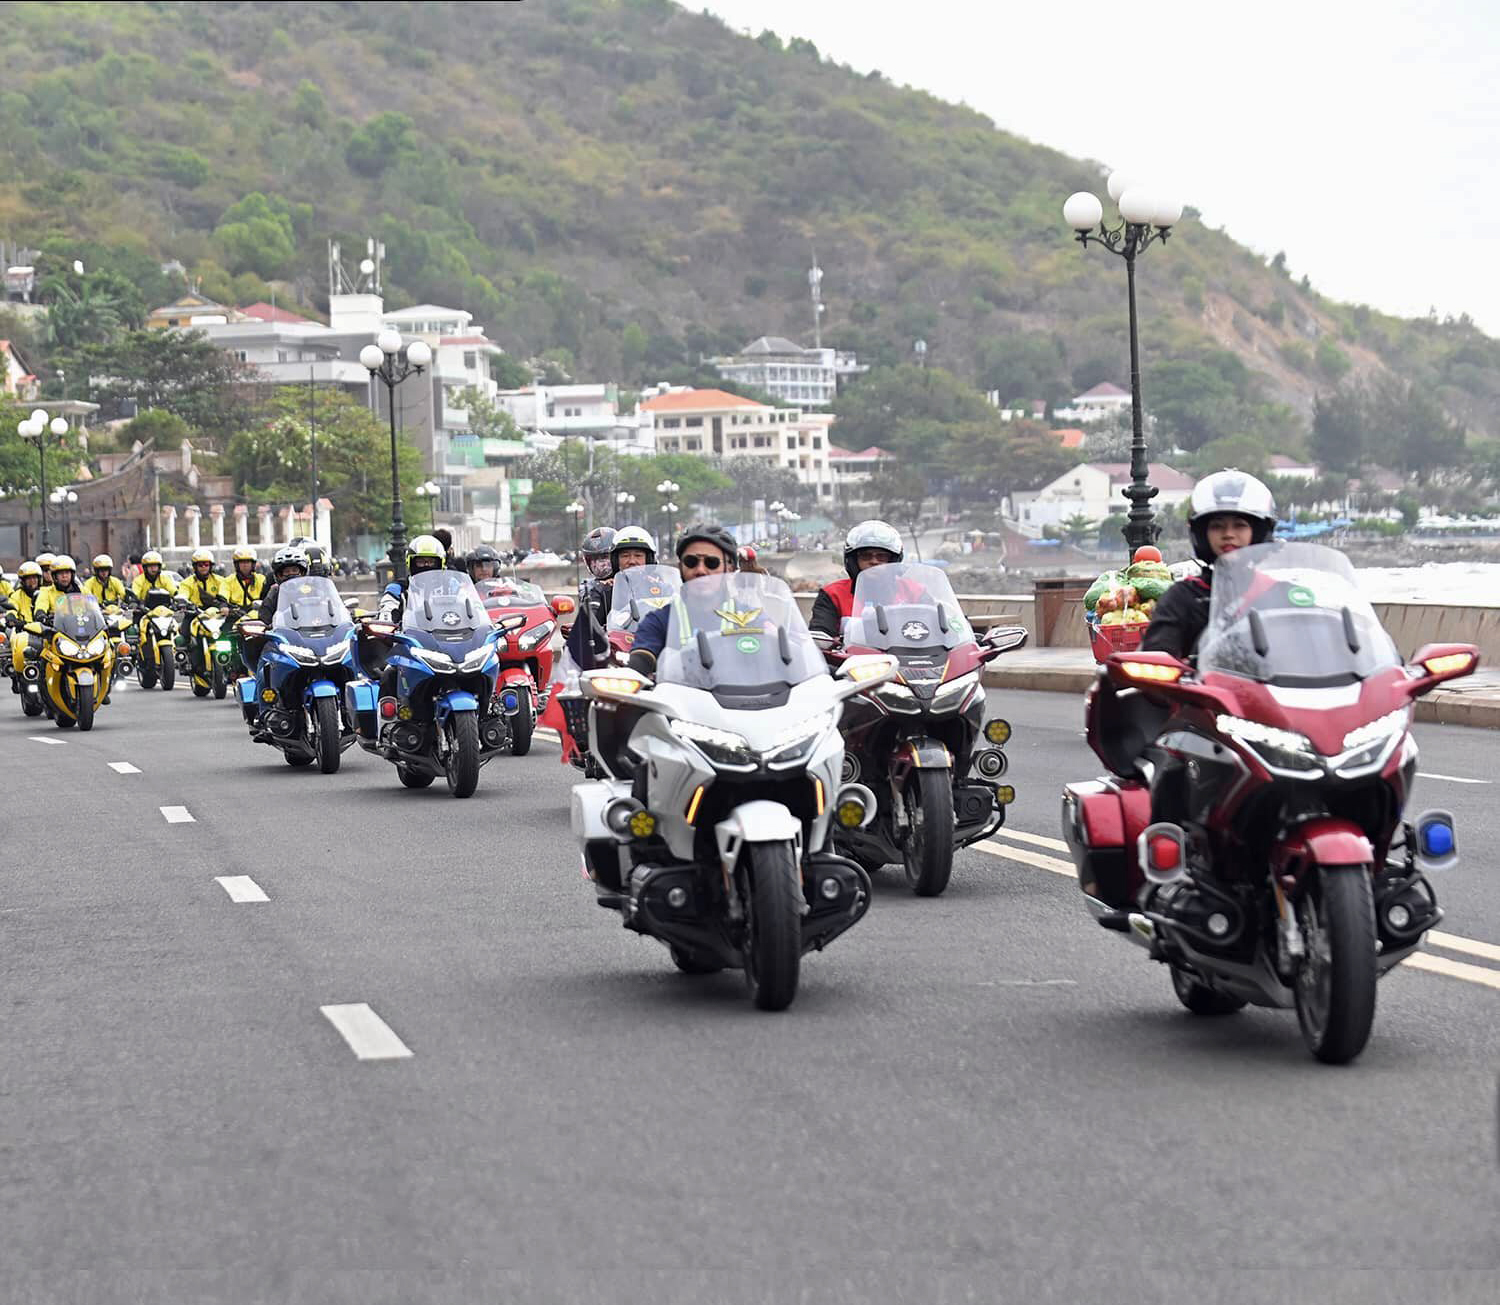 Đoàn xe mô tô diễu hành qua nhiều cung đường và địa điểm đẹp của  TP. Vũng Tàu.